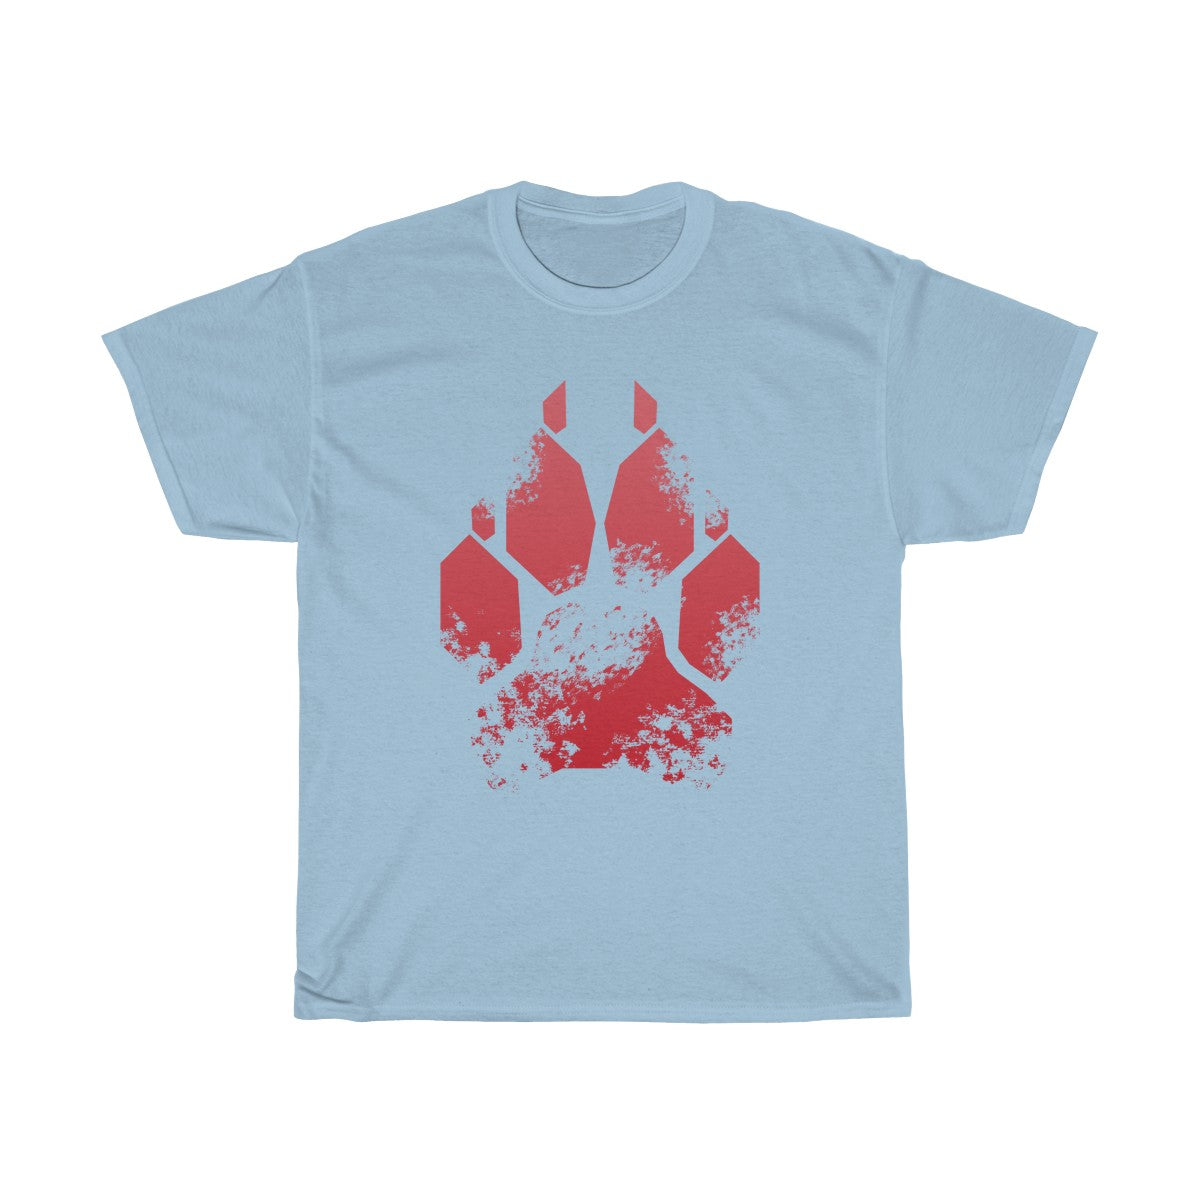 Splash Red Canine - T-Shirt T-Shirt Wexon Light Blue S 